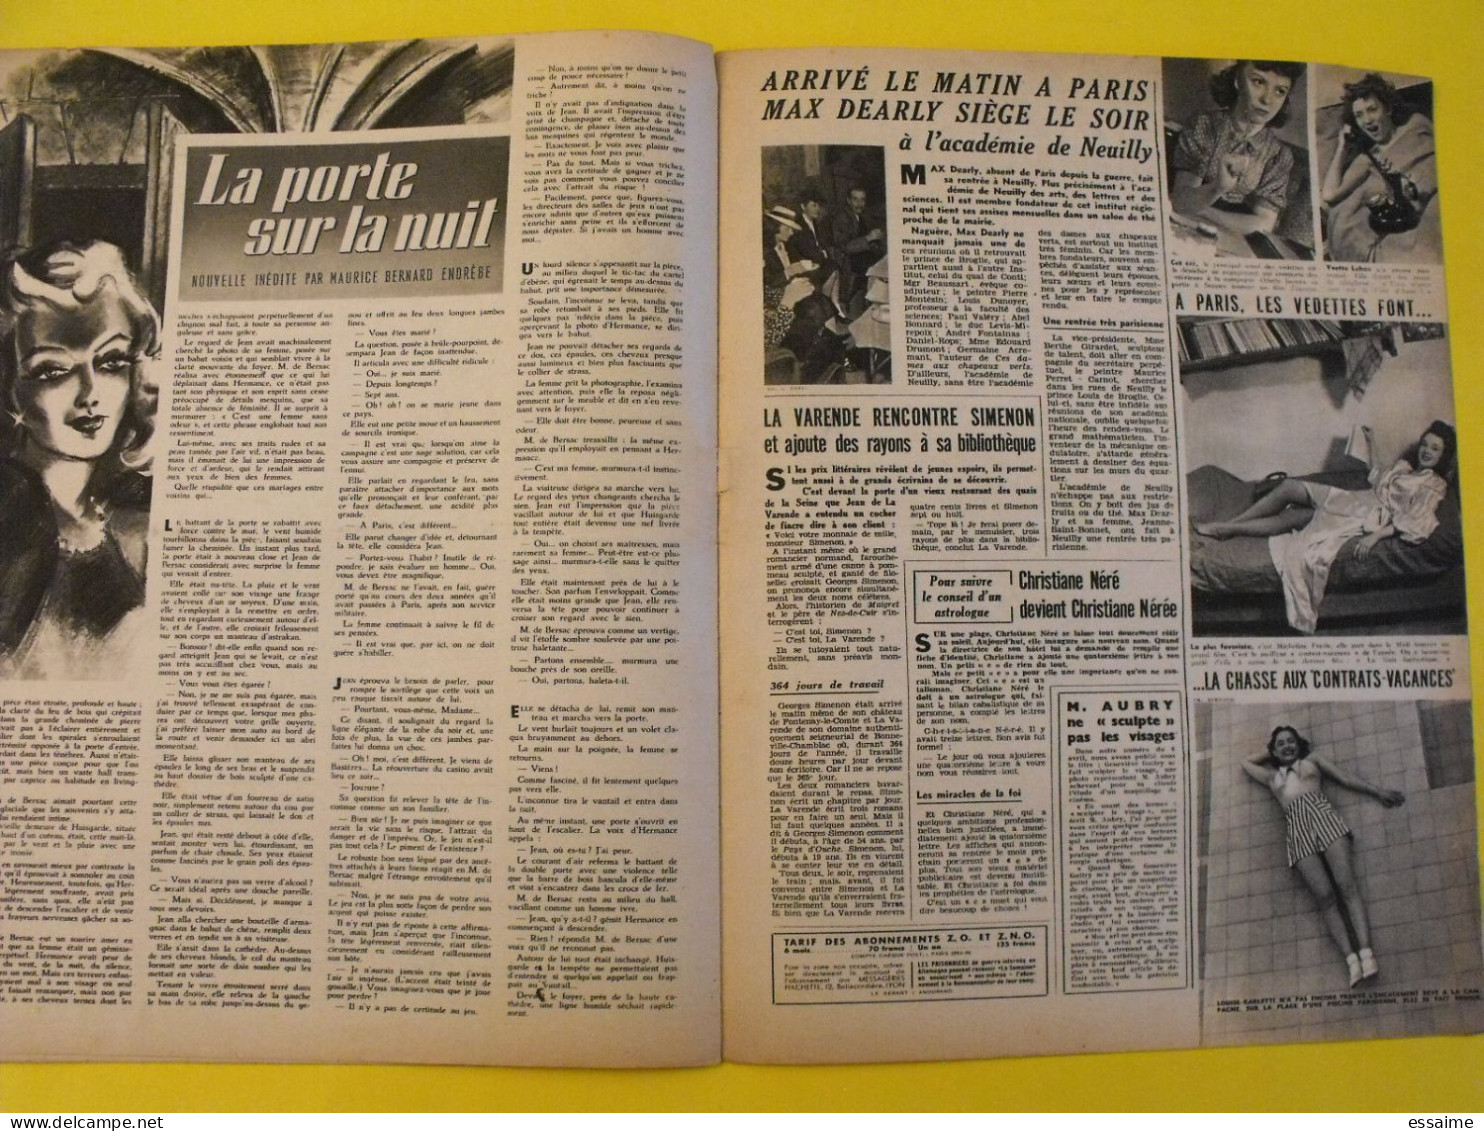 6 revues La semaine de 1942. actualités guerre photos collaboration sebastopol micheline presle dieppe libye